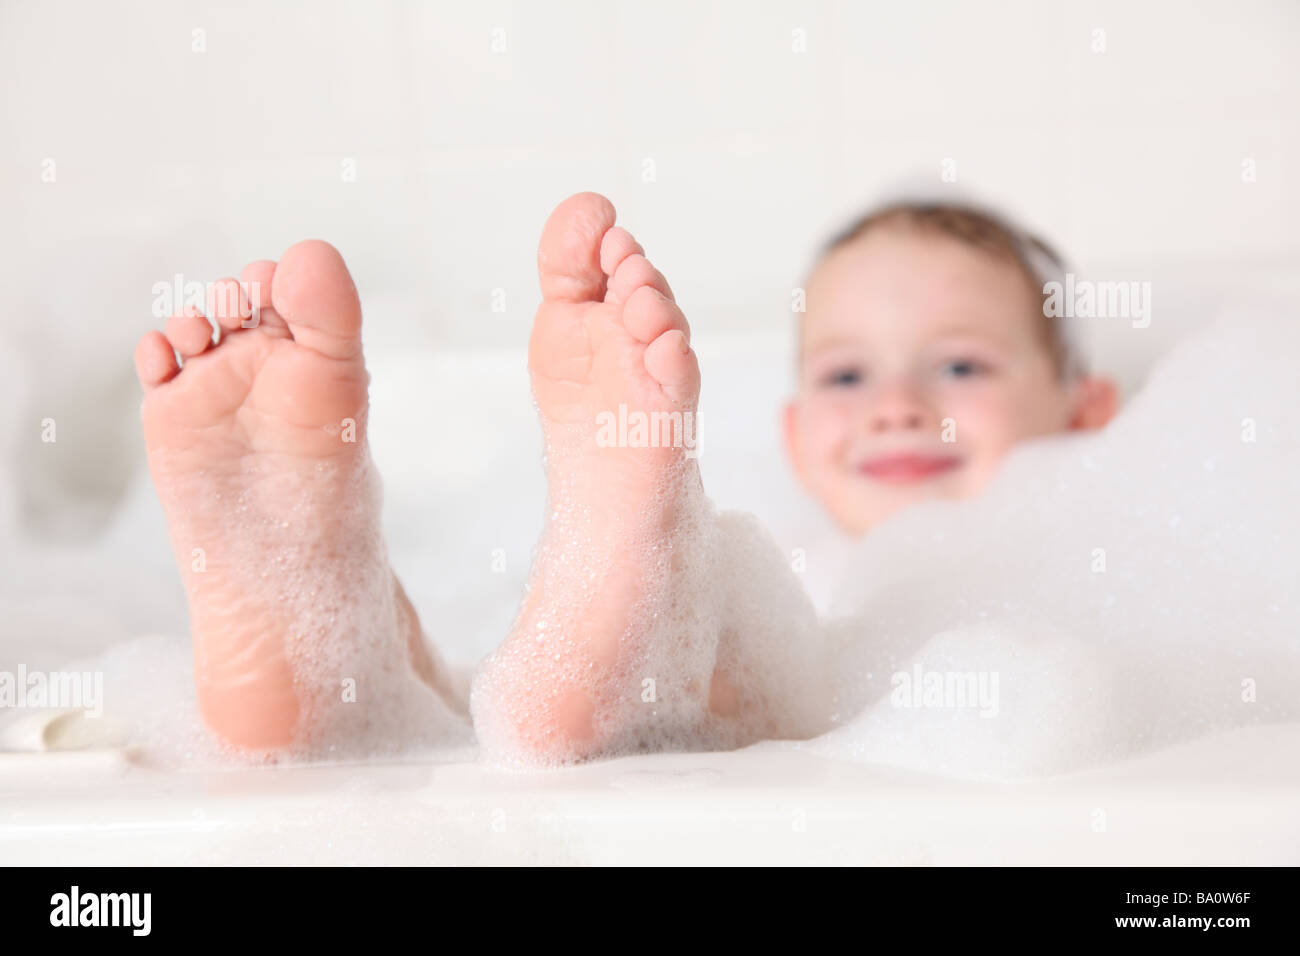 Jeune garçon avec pieds dépassant du bain de mousse Banque D'Images